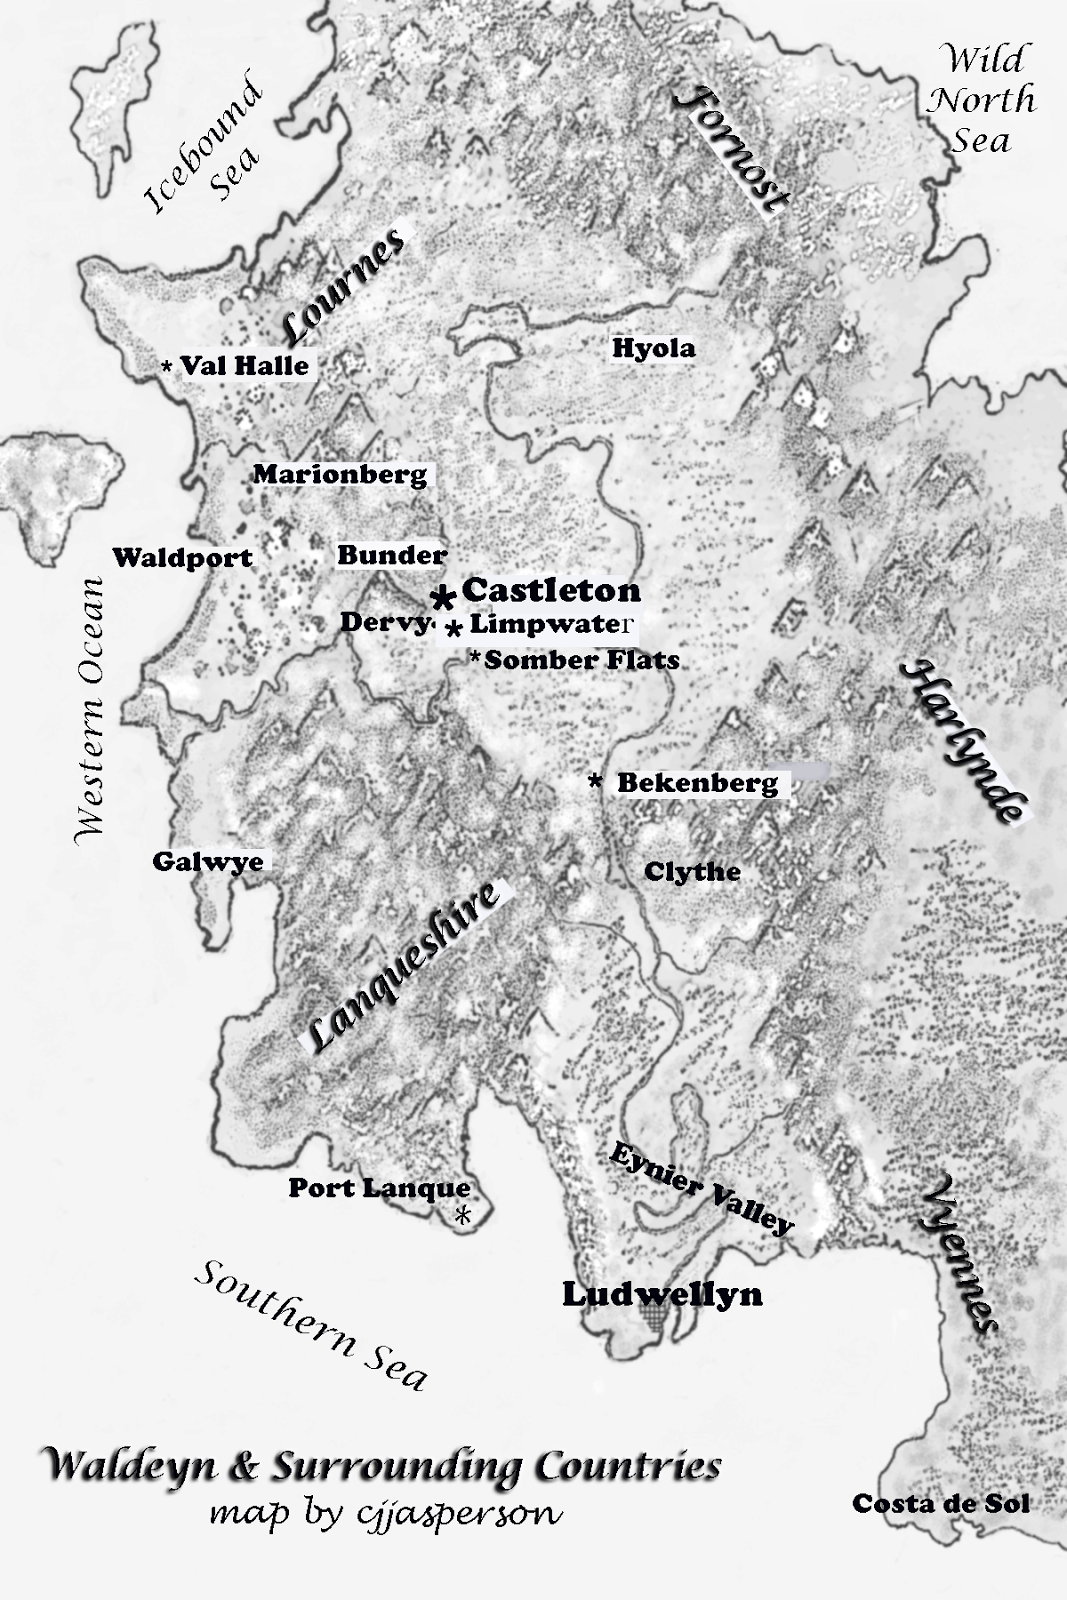 Map of Waldeyn